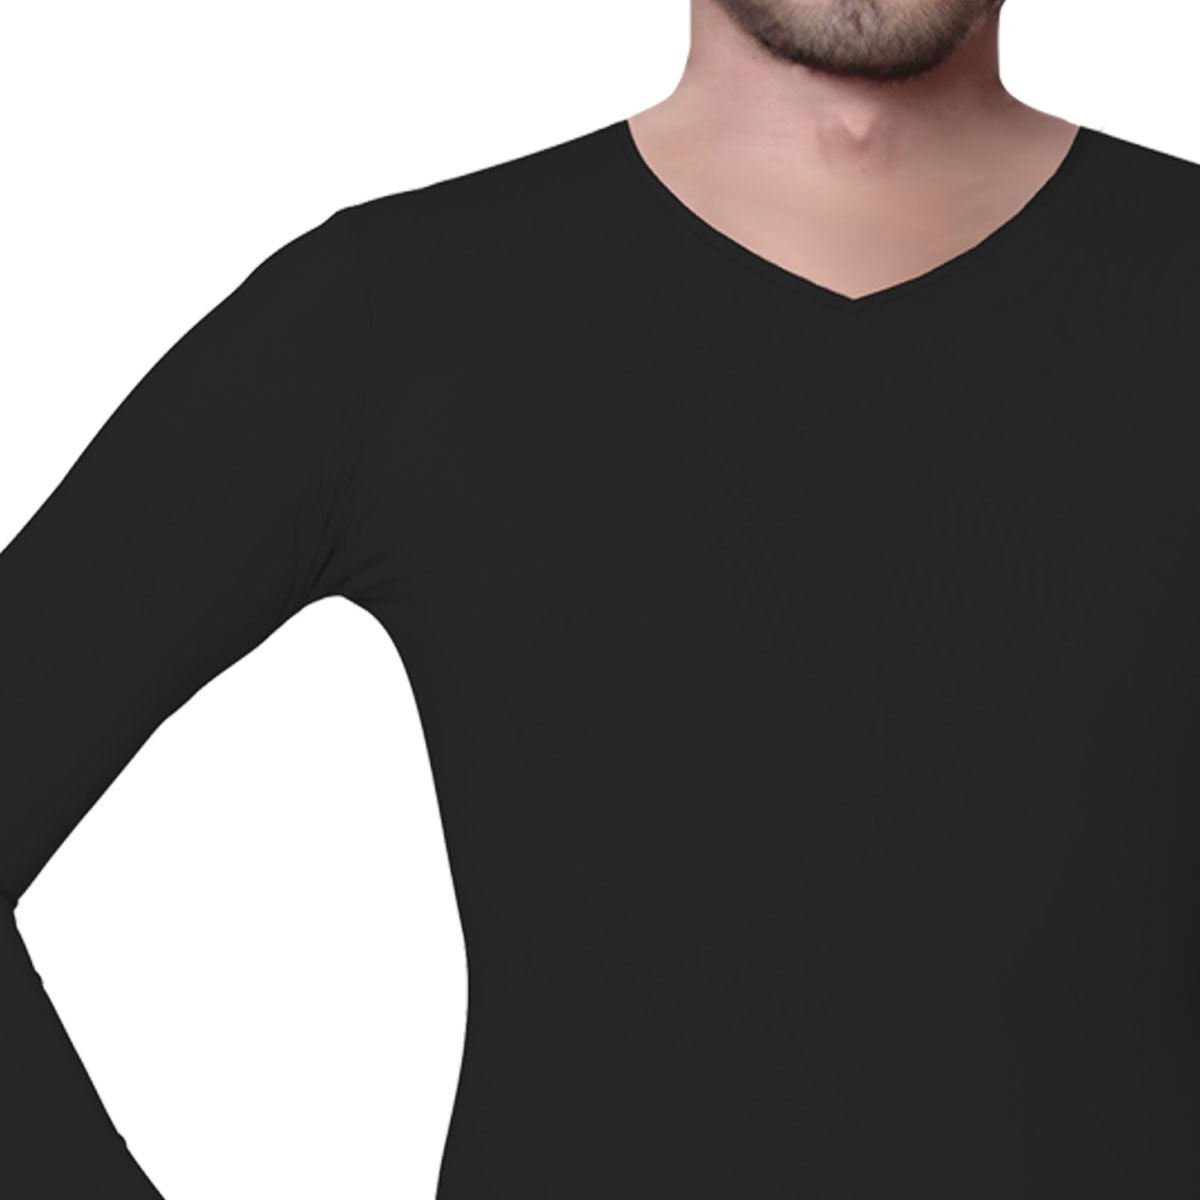 Camiseta negra térmica